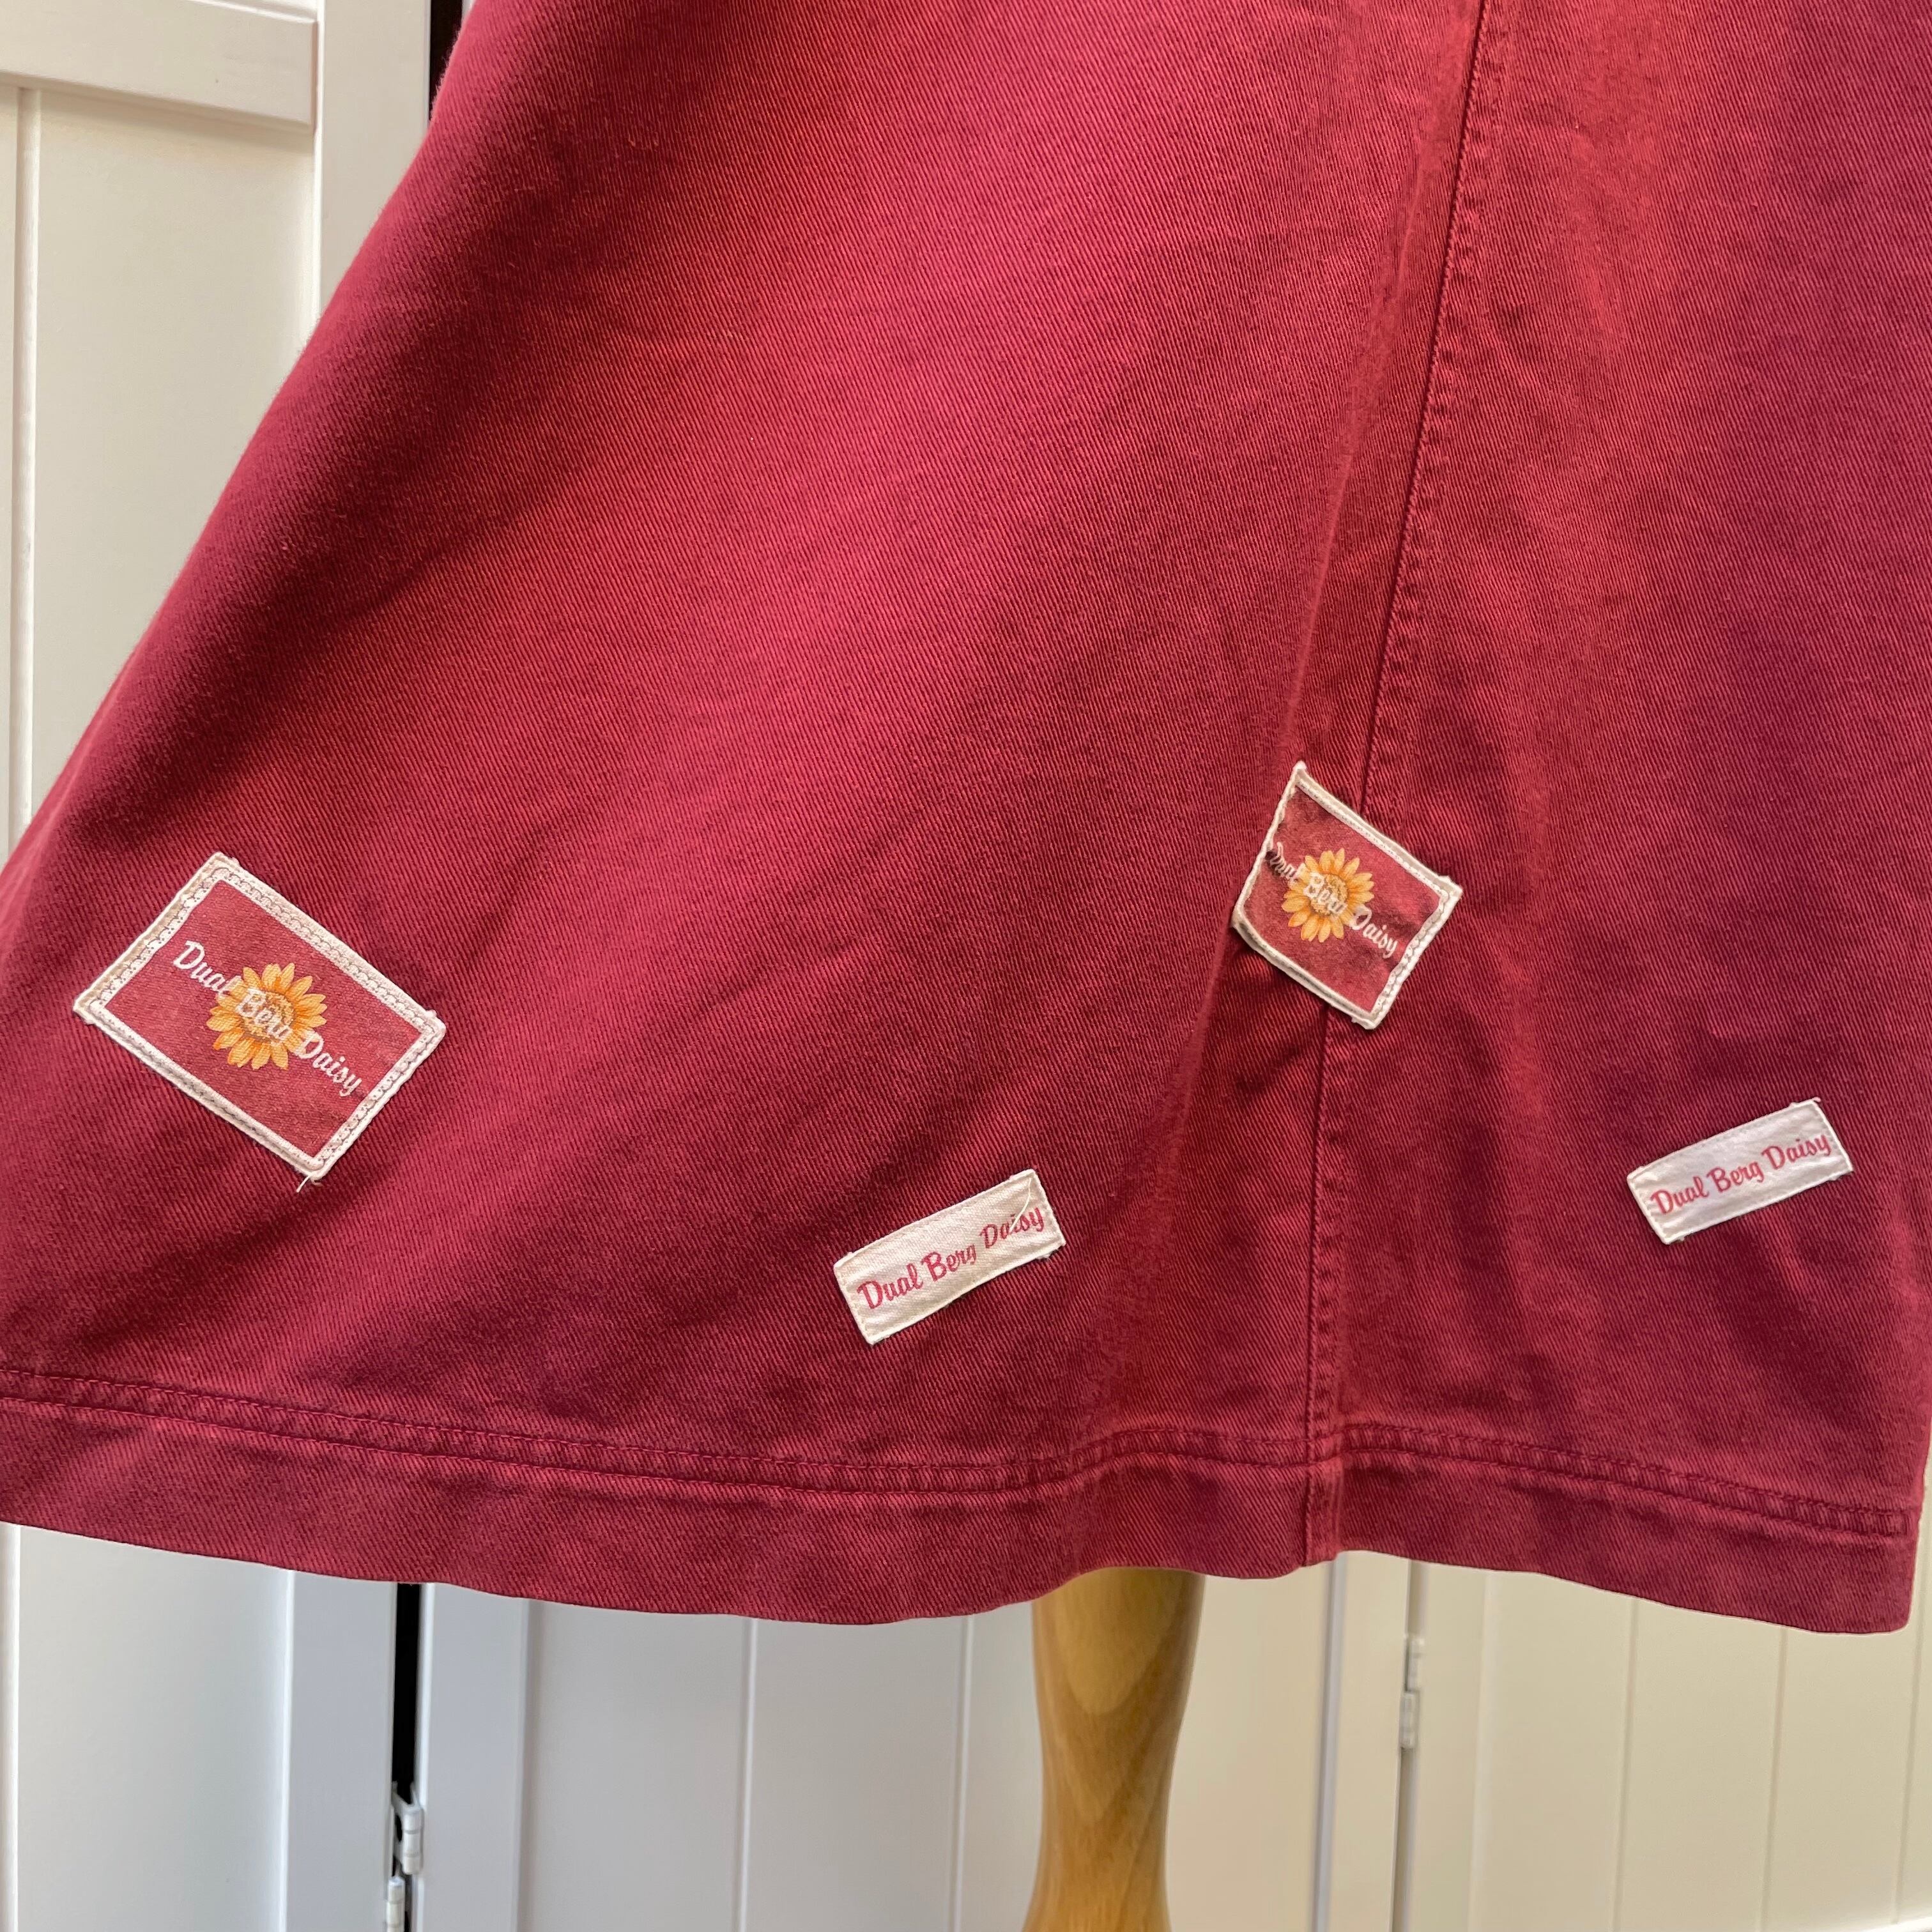 daisy appliqué jumper skirt〈レトロ古着 デイジーアップリケ ジャンパースカート 赤 レッド ボルドー日本製〉  RiLOU〈リル〉